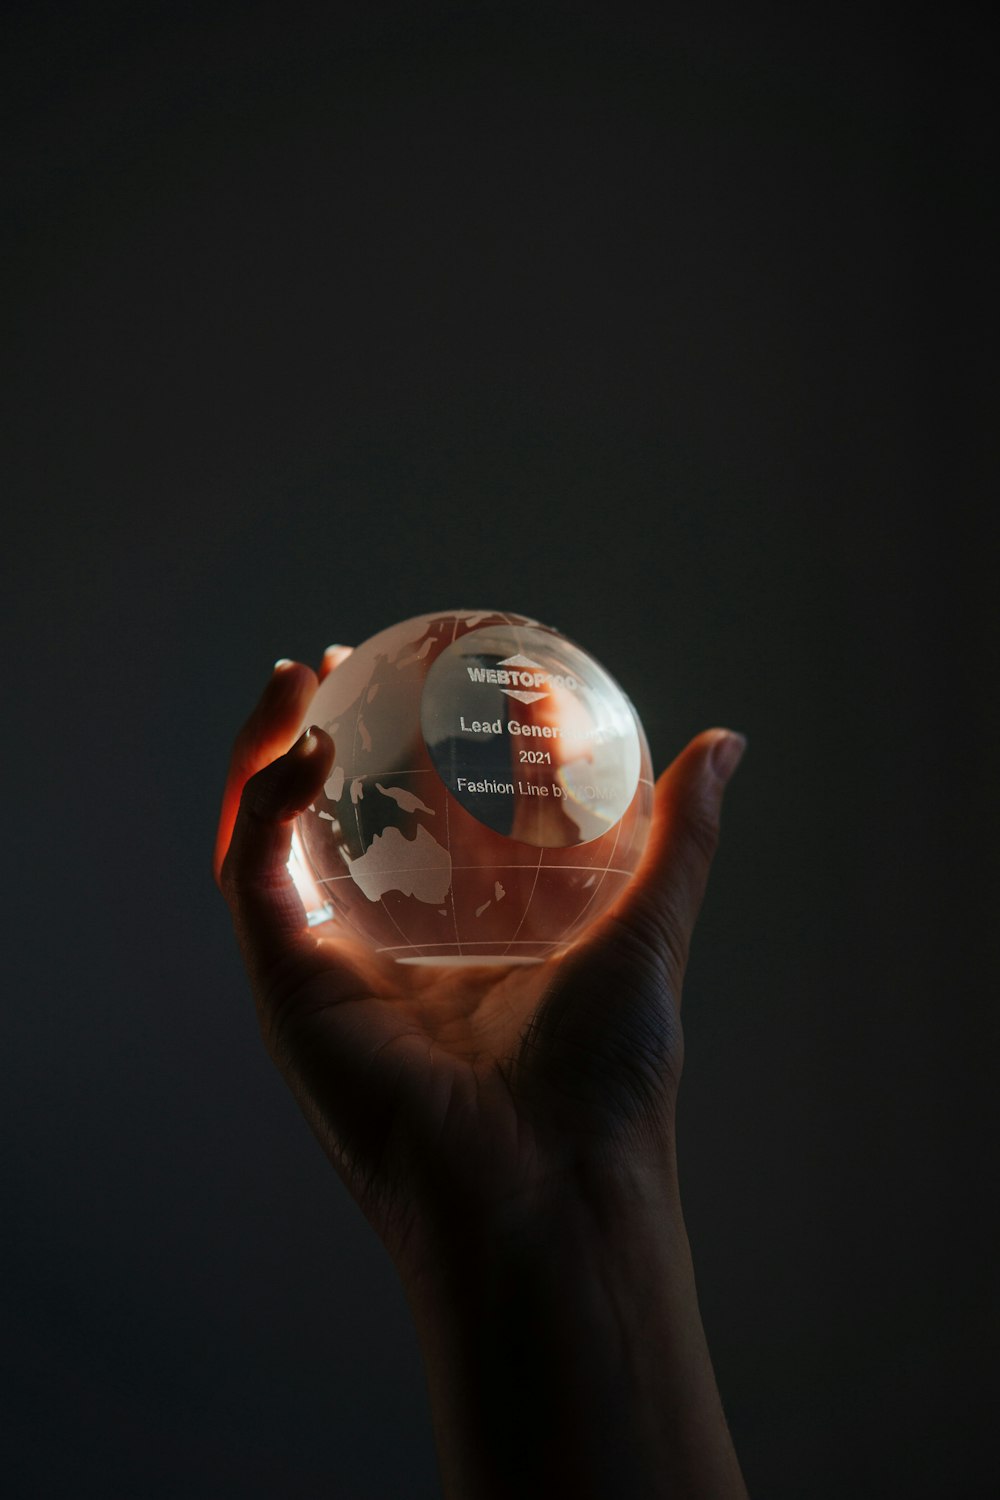 Una mano sosteniendo una bola de cristal con un mapa en ella